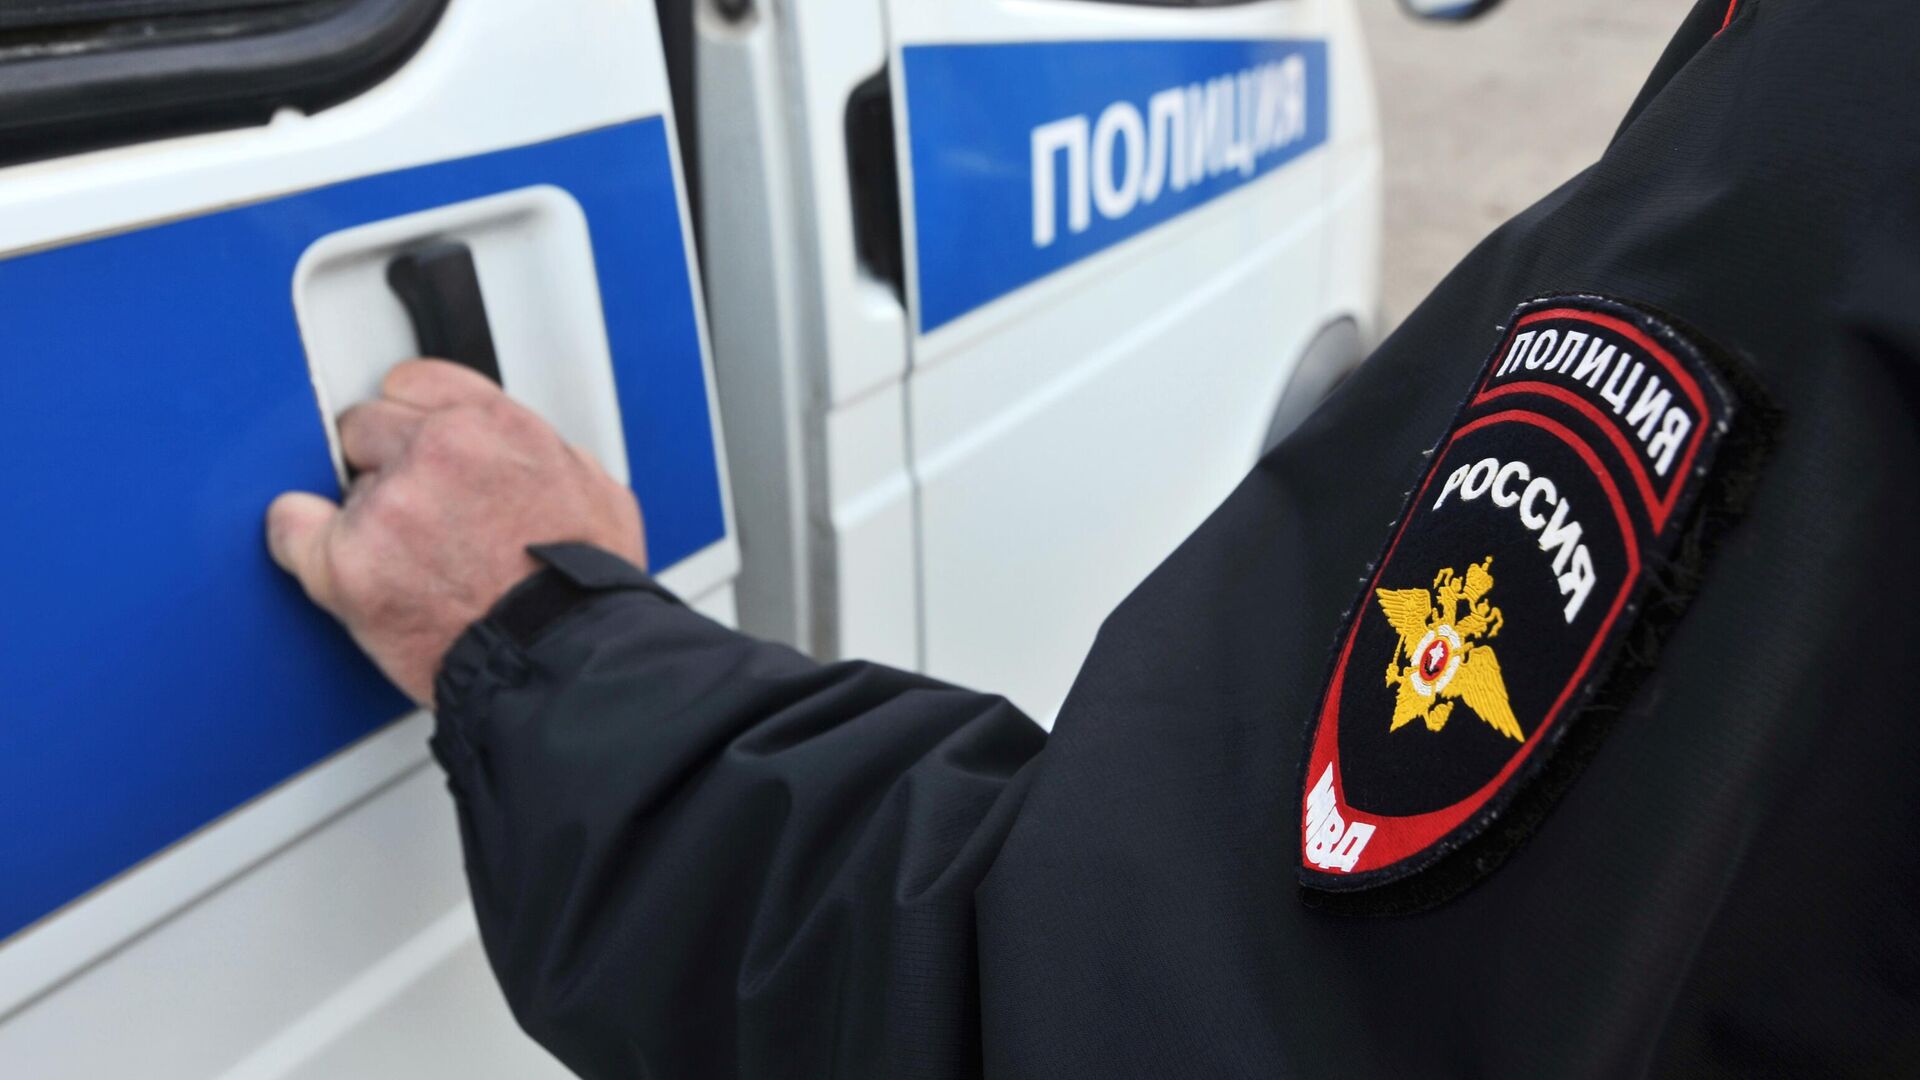 Злоумышленники похитили ценности на 8,1 млн рублей из коттеджа под Петербургом